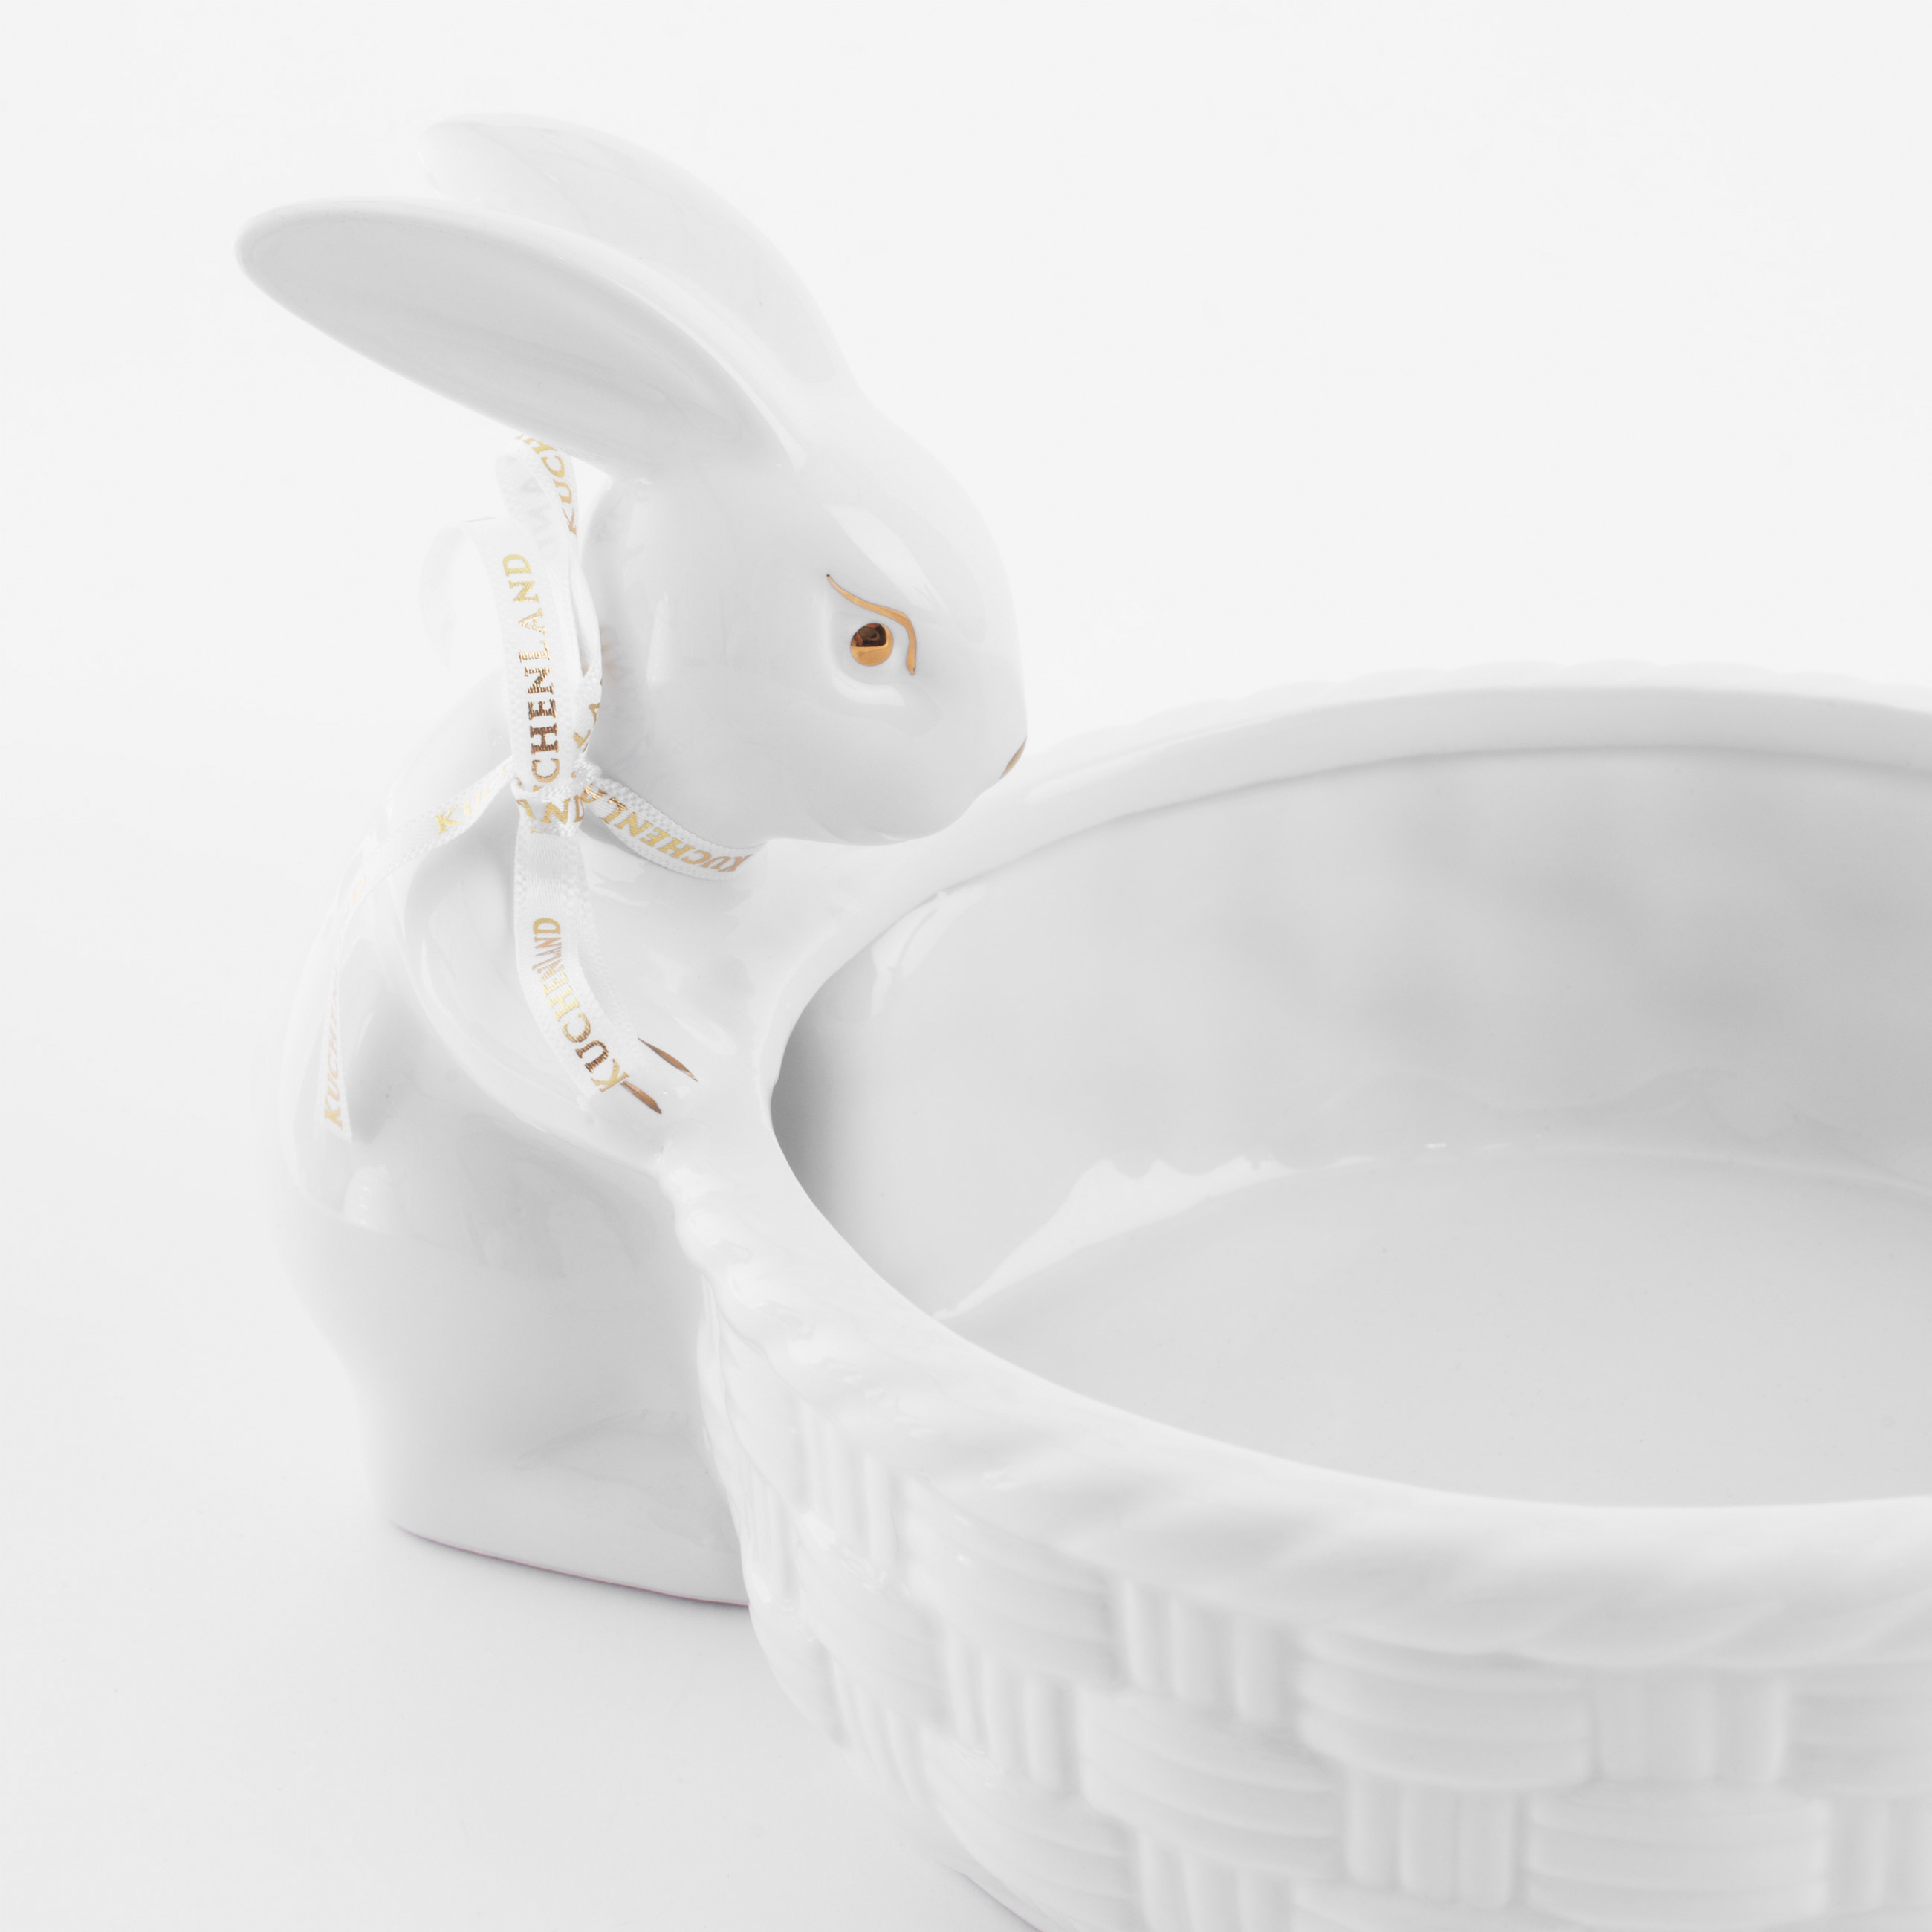 Конфетница, 28х16 см, керамика, бело-золотистая, Кролики с плетенной корзиной, Easter gold изображение № 5